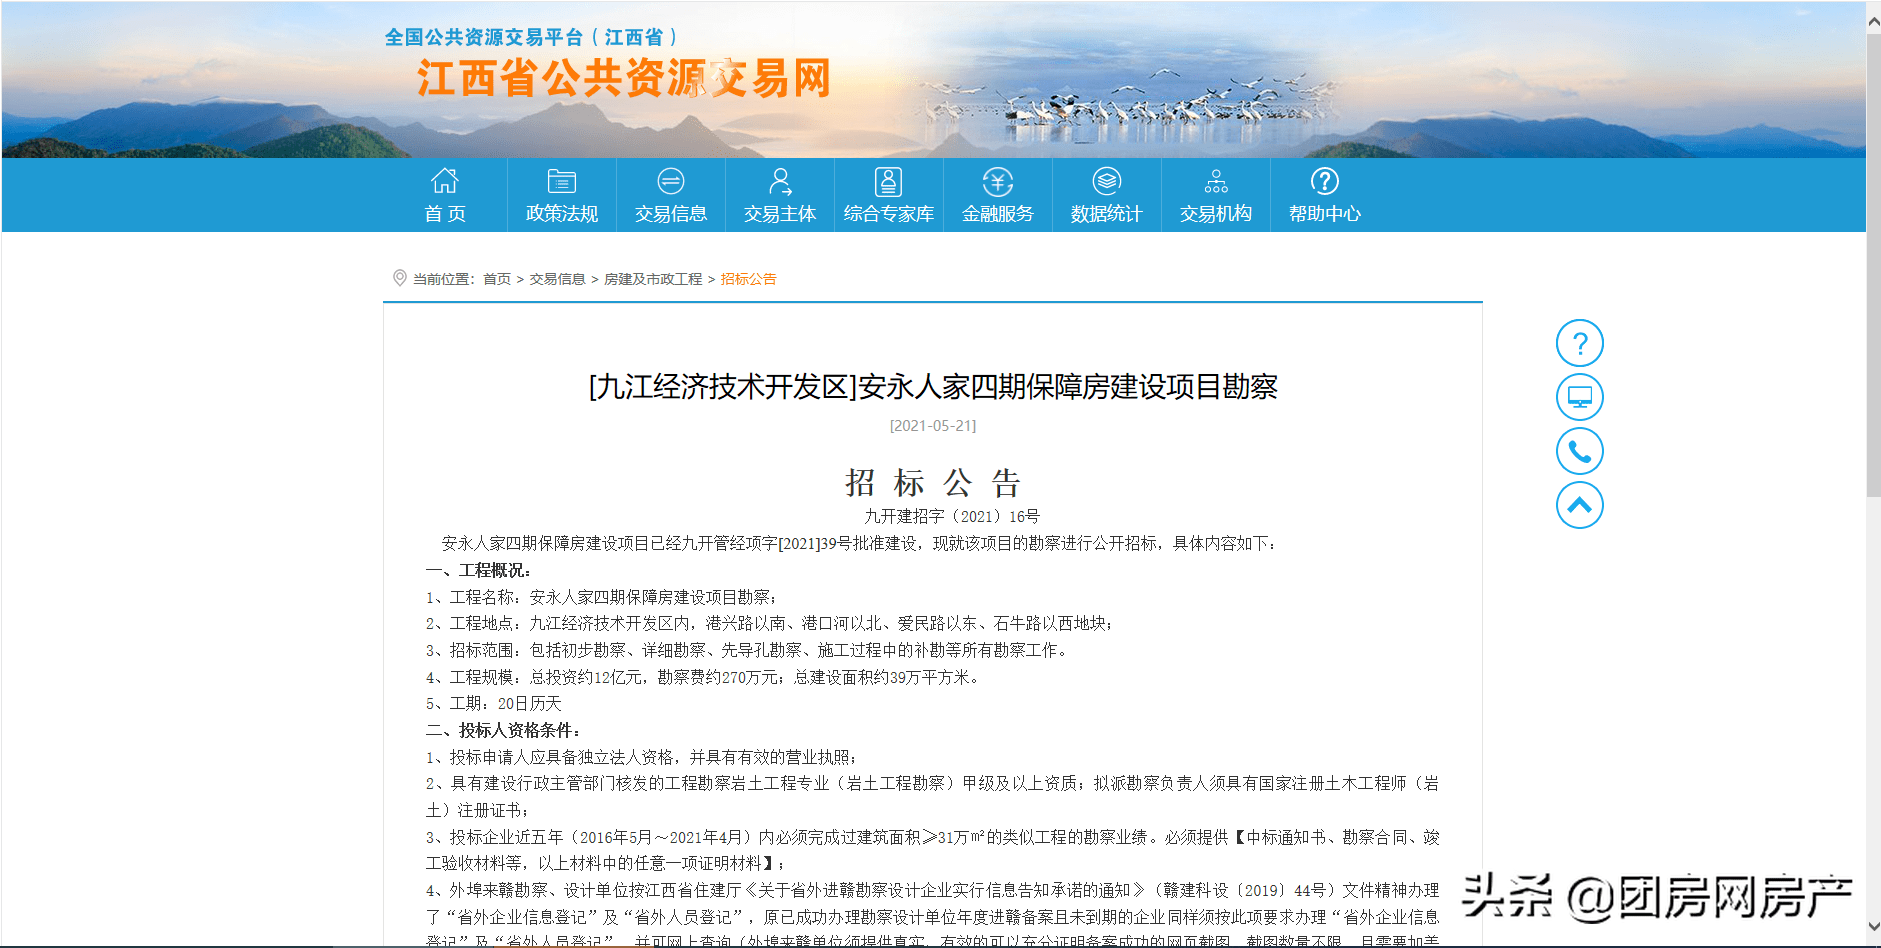 九江市公共租赁住房在线报名平台“三榜公示”